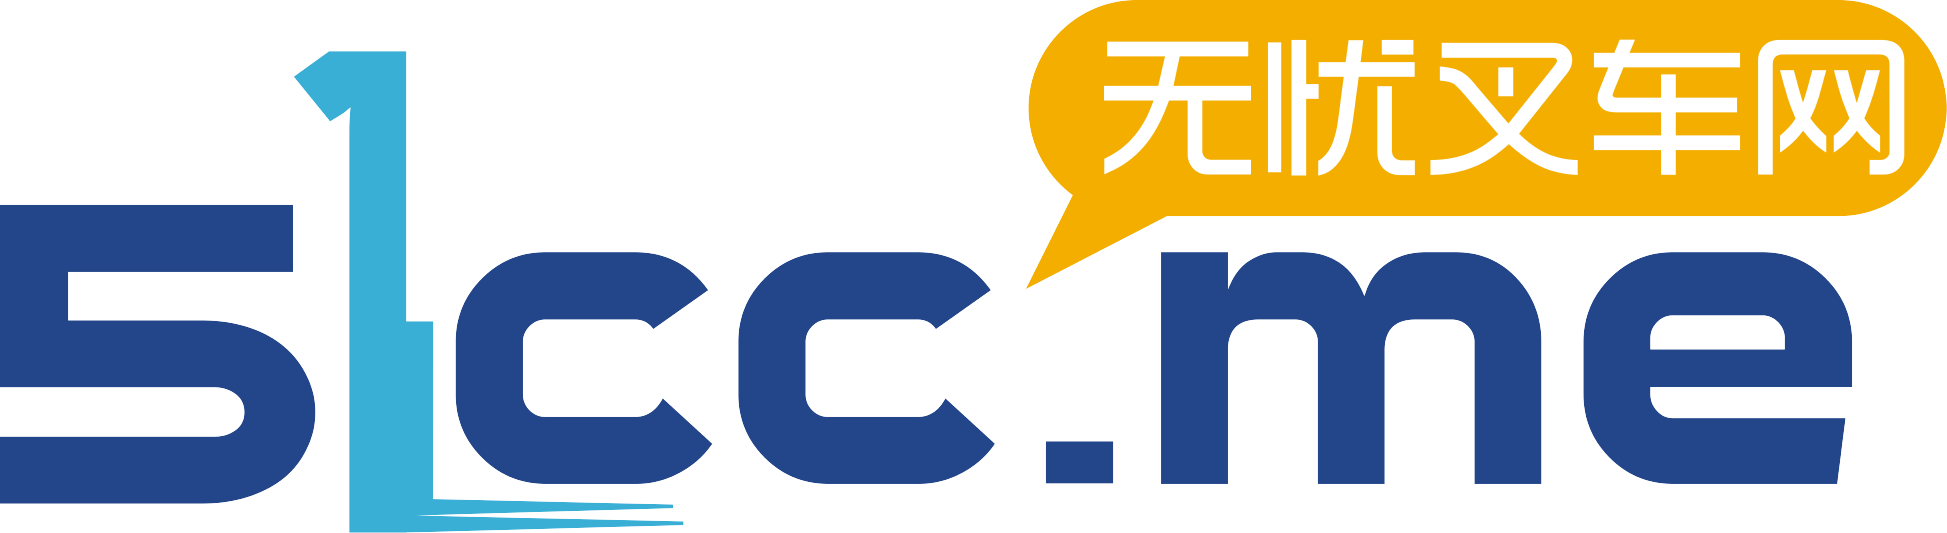 16_Logo_Shanghai 51CC Tech Co., Ltd.-01